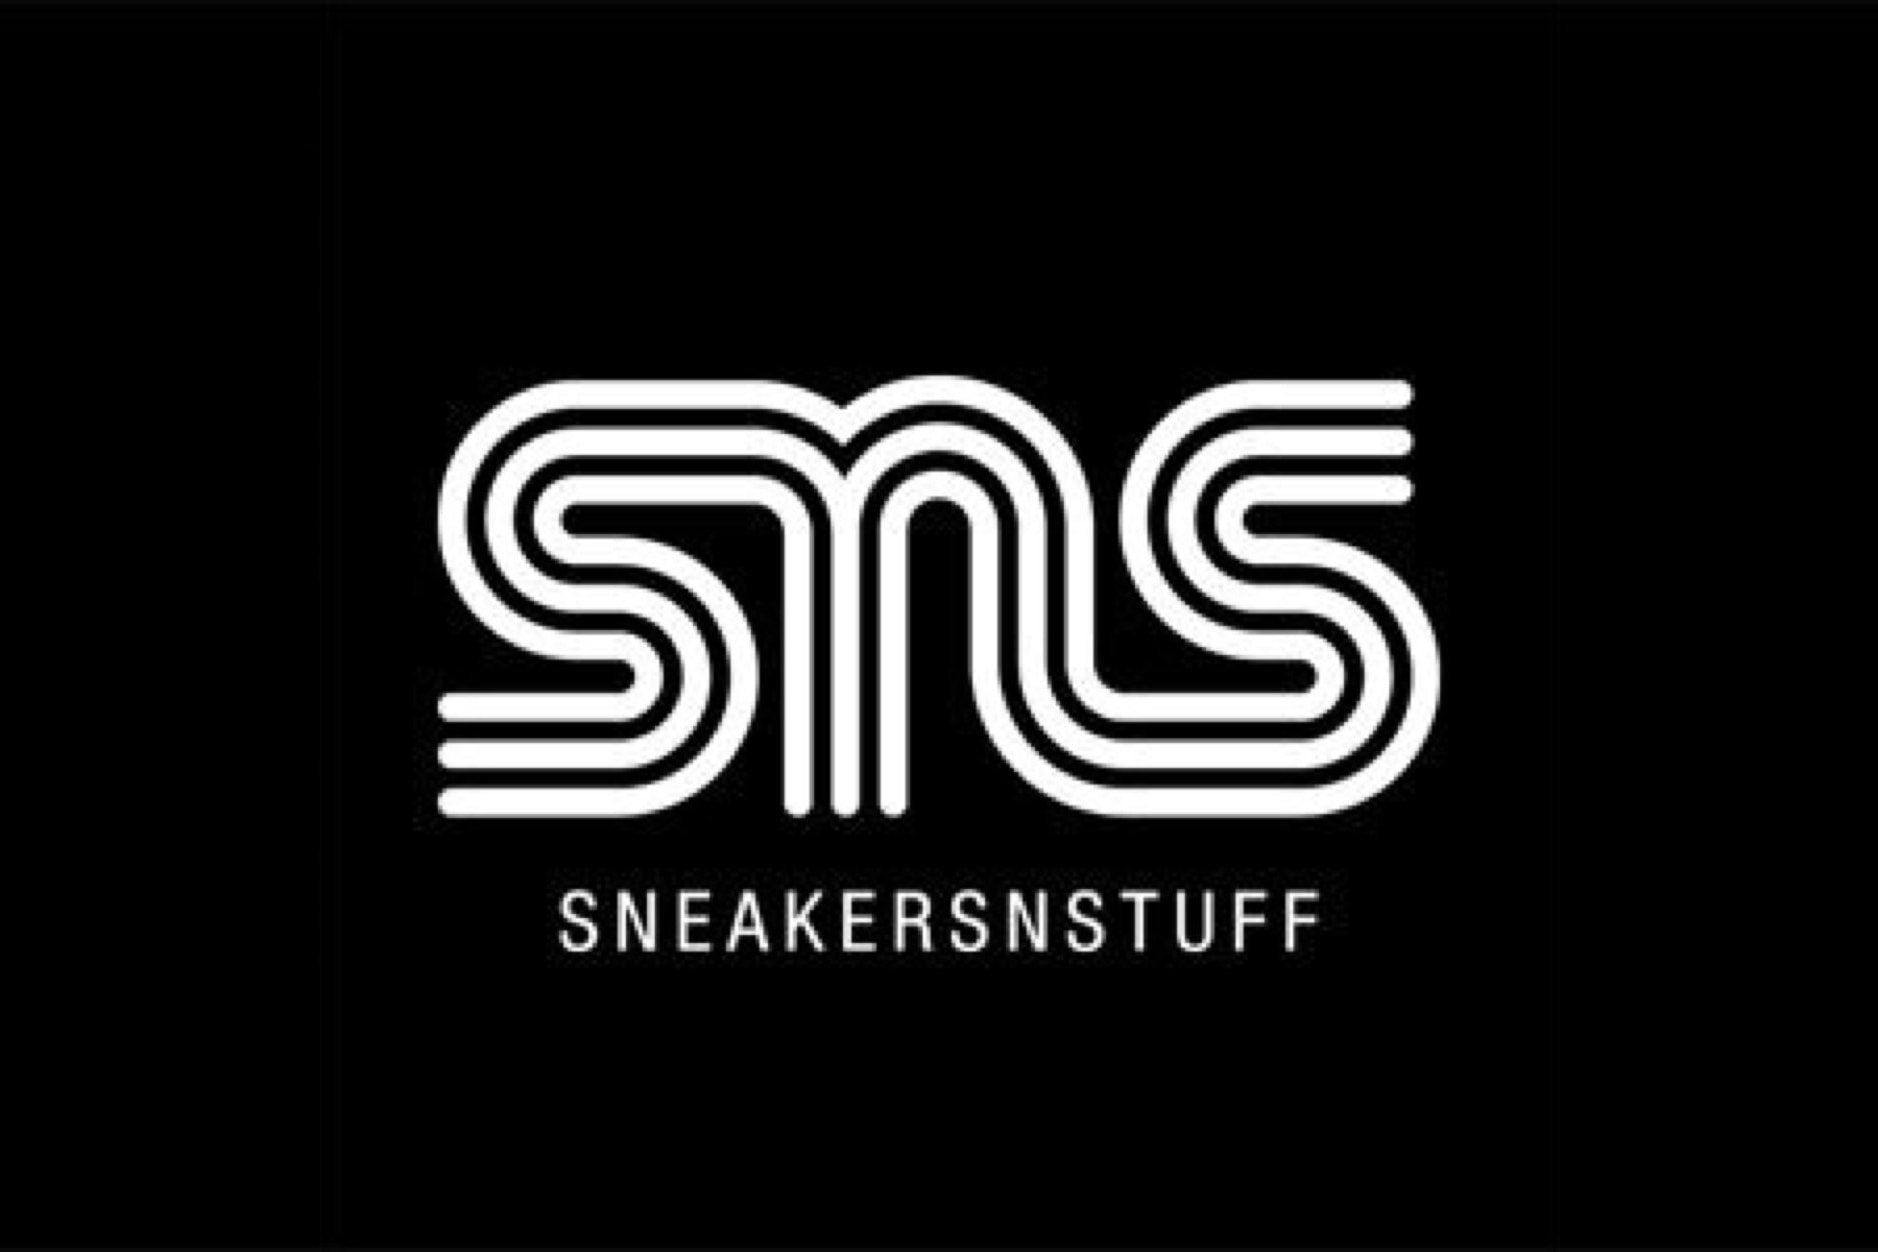 瑞典鞋店 Sneakersnstuff 擴展版圖宣佈登陸日本東京